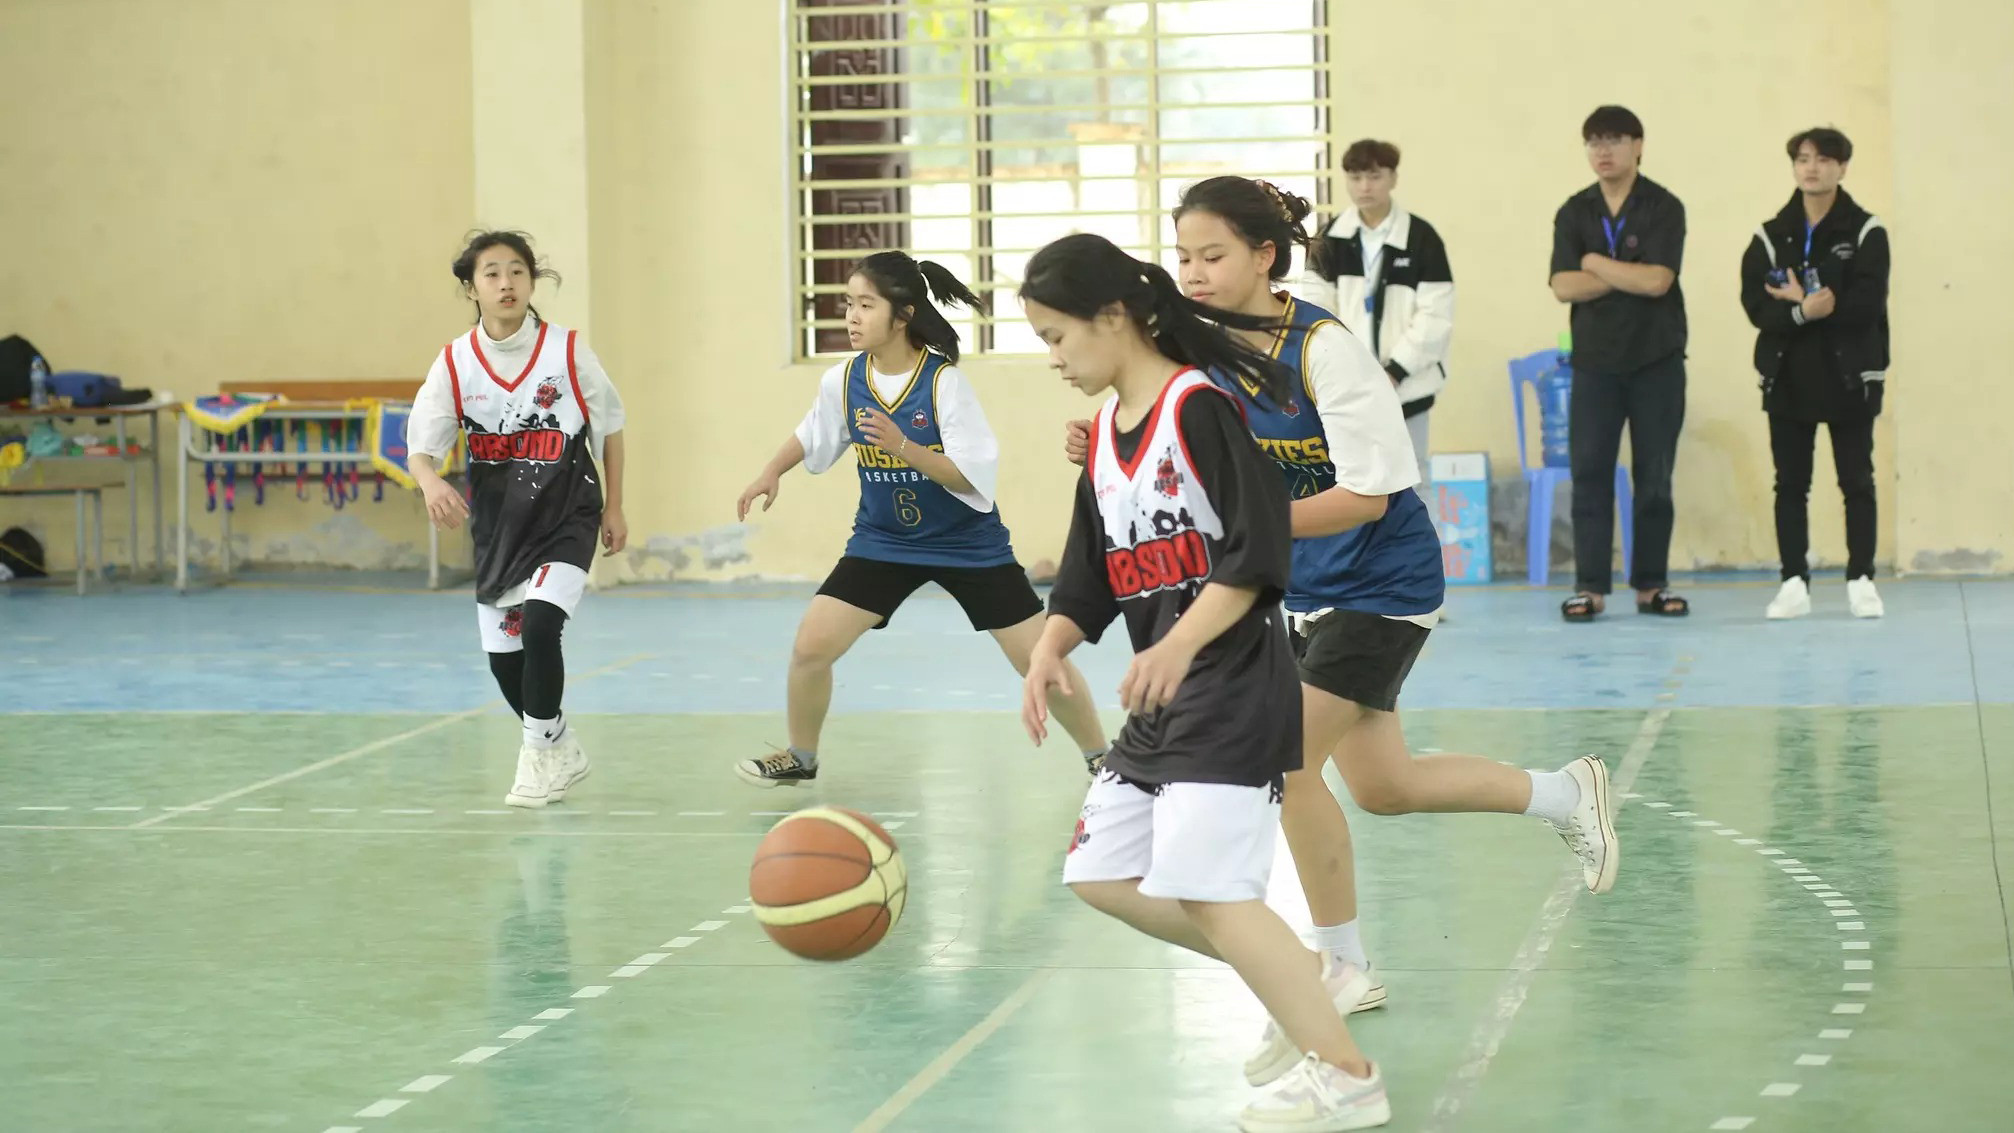 bna_Một buổi tập luyện bóng rổ của các học sinh Trường THPT Cửa Lò.jpg